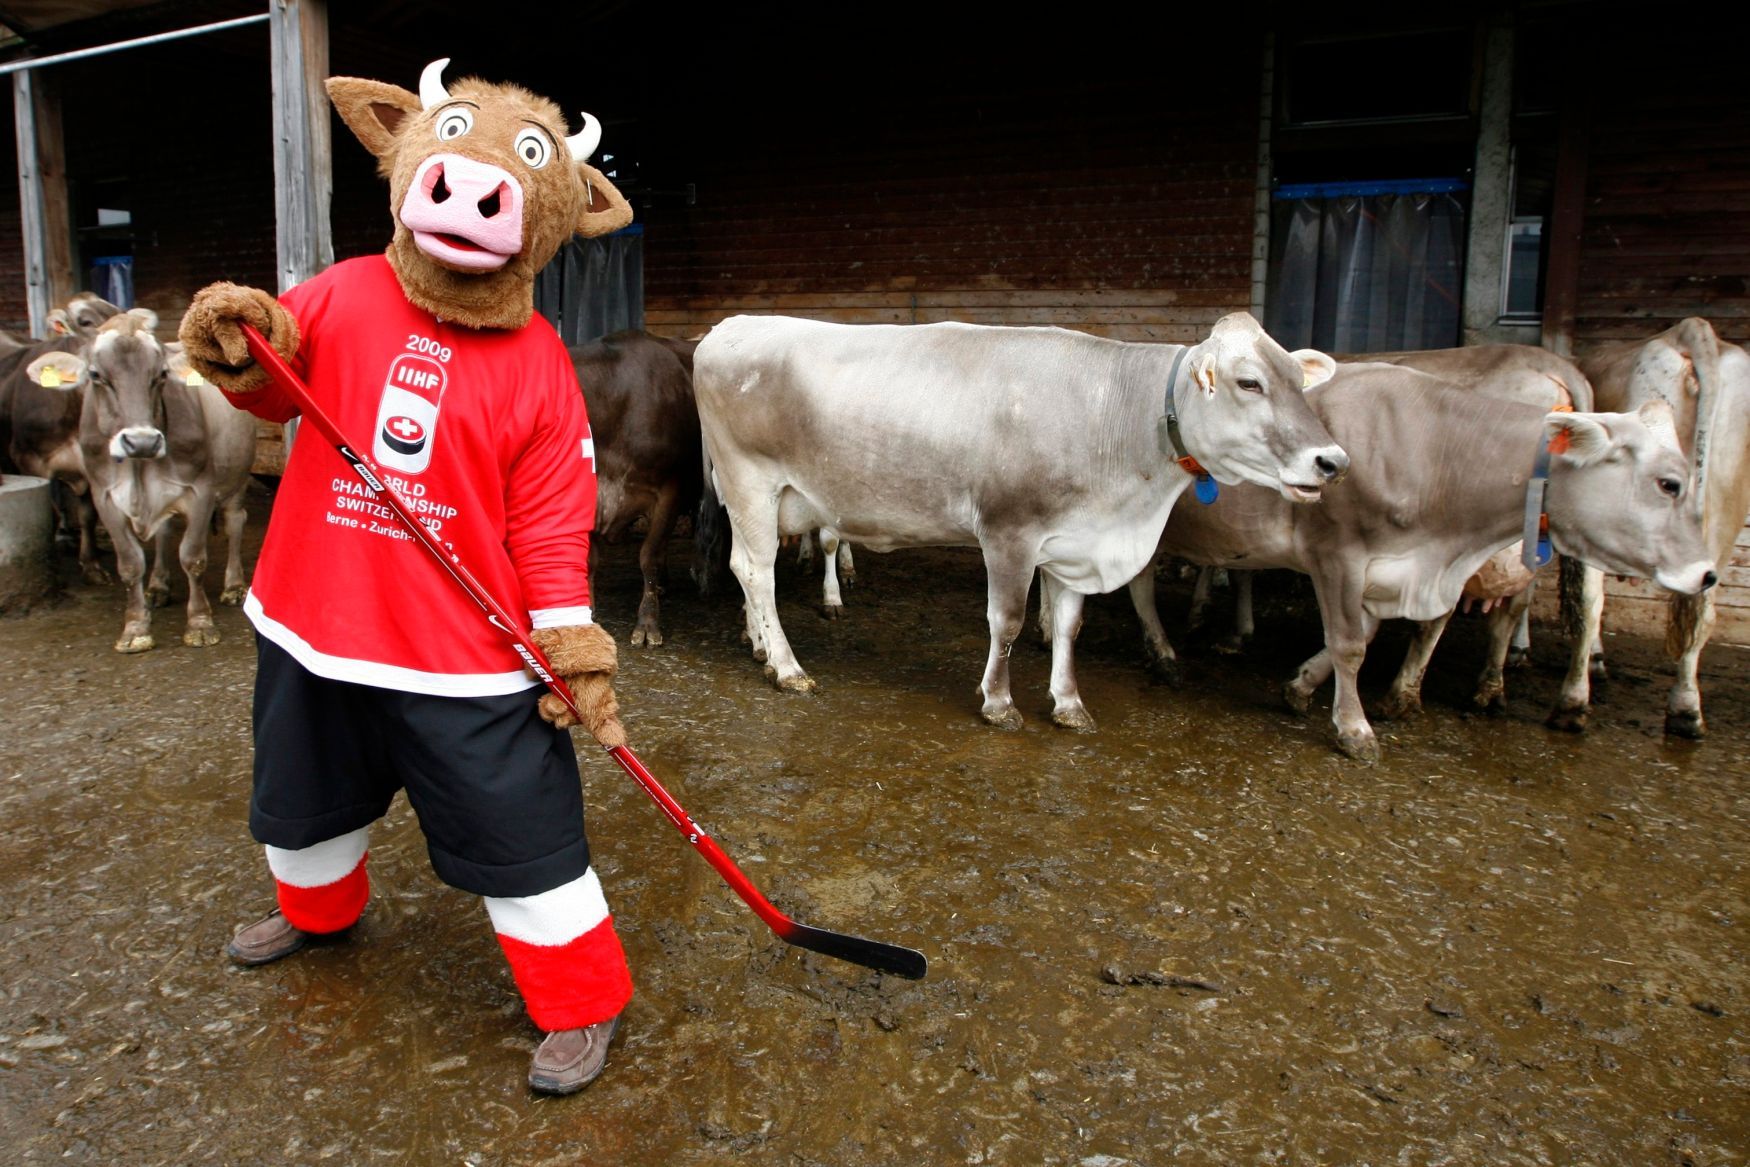 Maskot MS v hokeji 2009 (Švýcarsko) - kráva Cooly